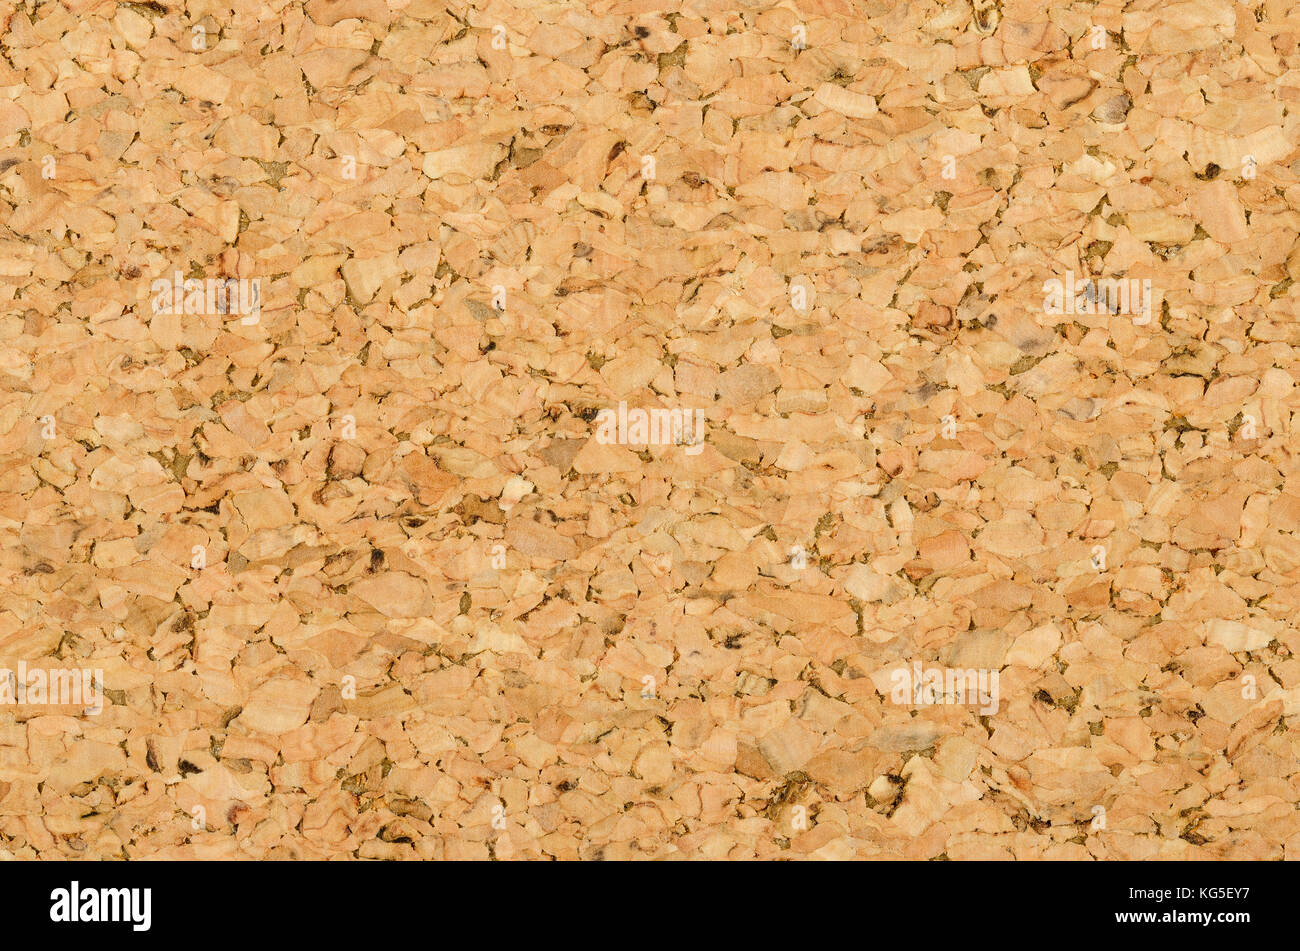 Hoja de corcho superficie con textura fina de grano pequeño, compuesto de alcornoque, Quercus suber. Los paneles decorativos y las chapas de madera, utilizado como tablones de anuncios. Foto de stock